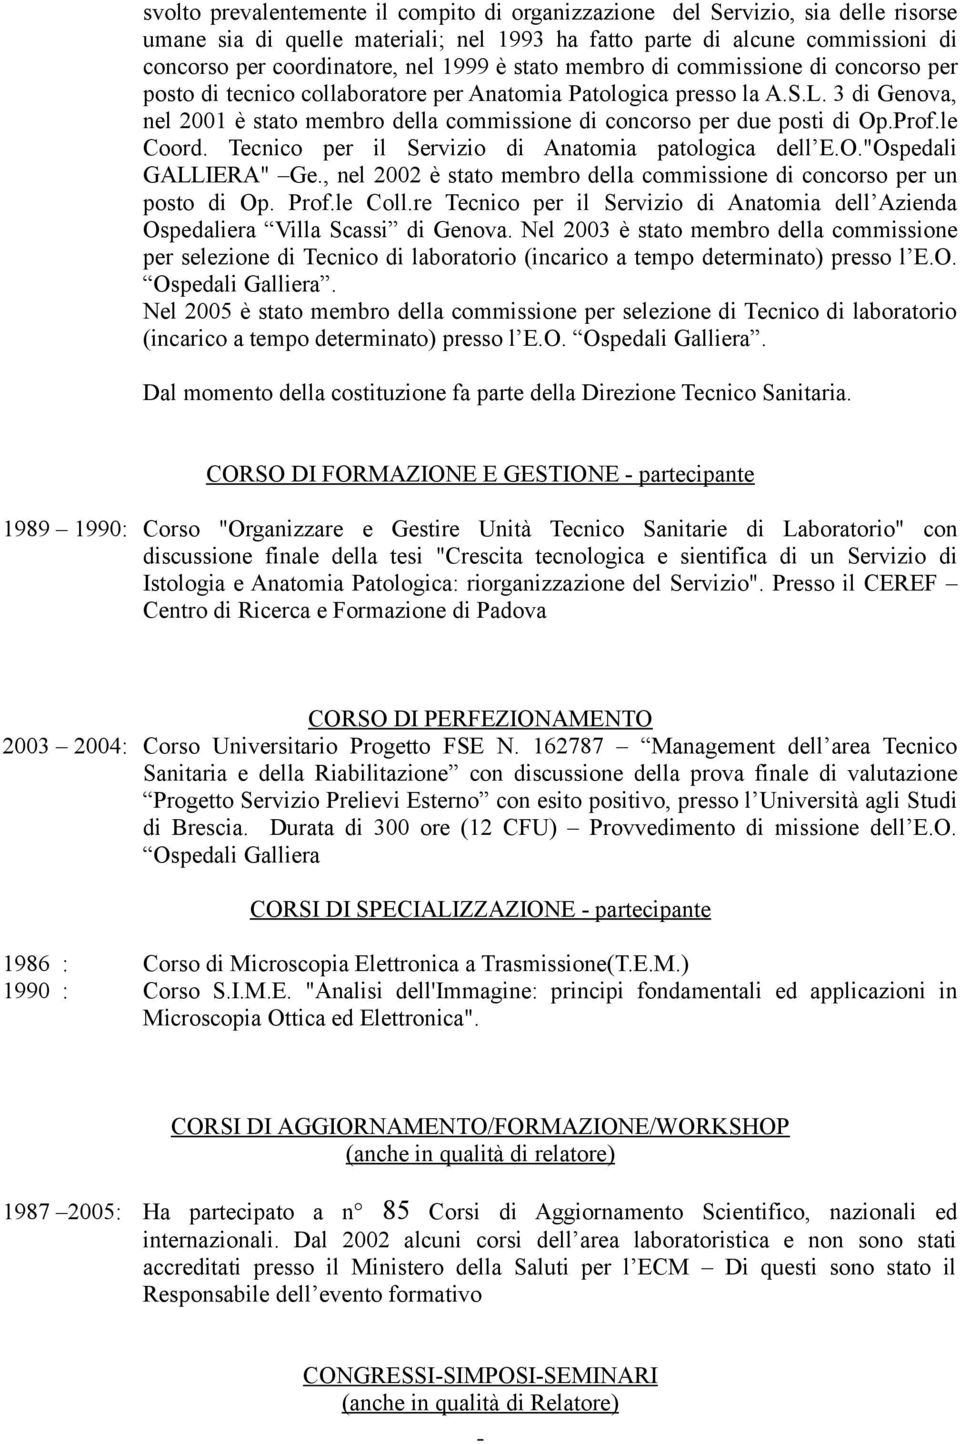 3 di Genova, nel 2001 è stato membro della commissione di concorso per due posti di Op.Prof.le Coord. Tecnico per il Servizio di Anatomia patologica dell E.O."Ospedali GALLIERA" Ge.